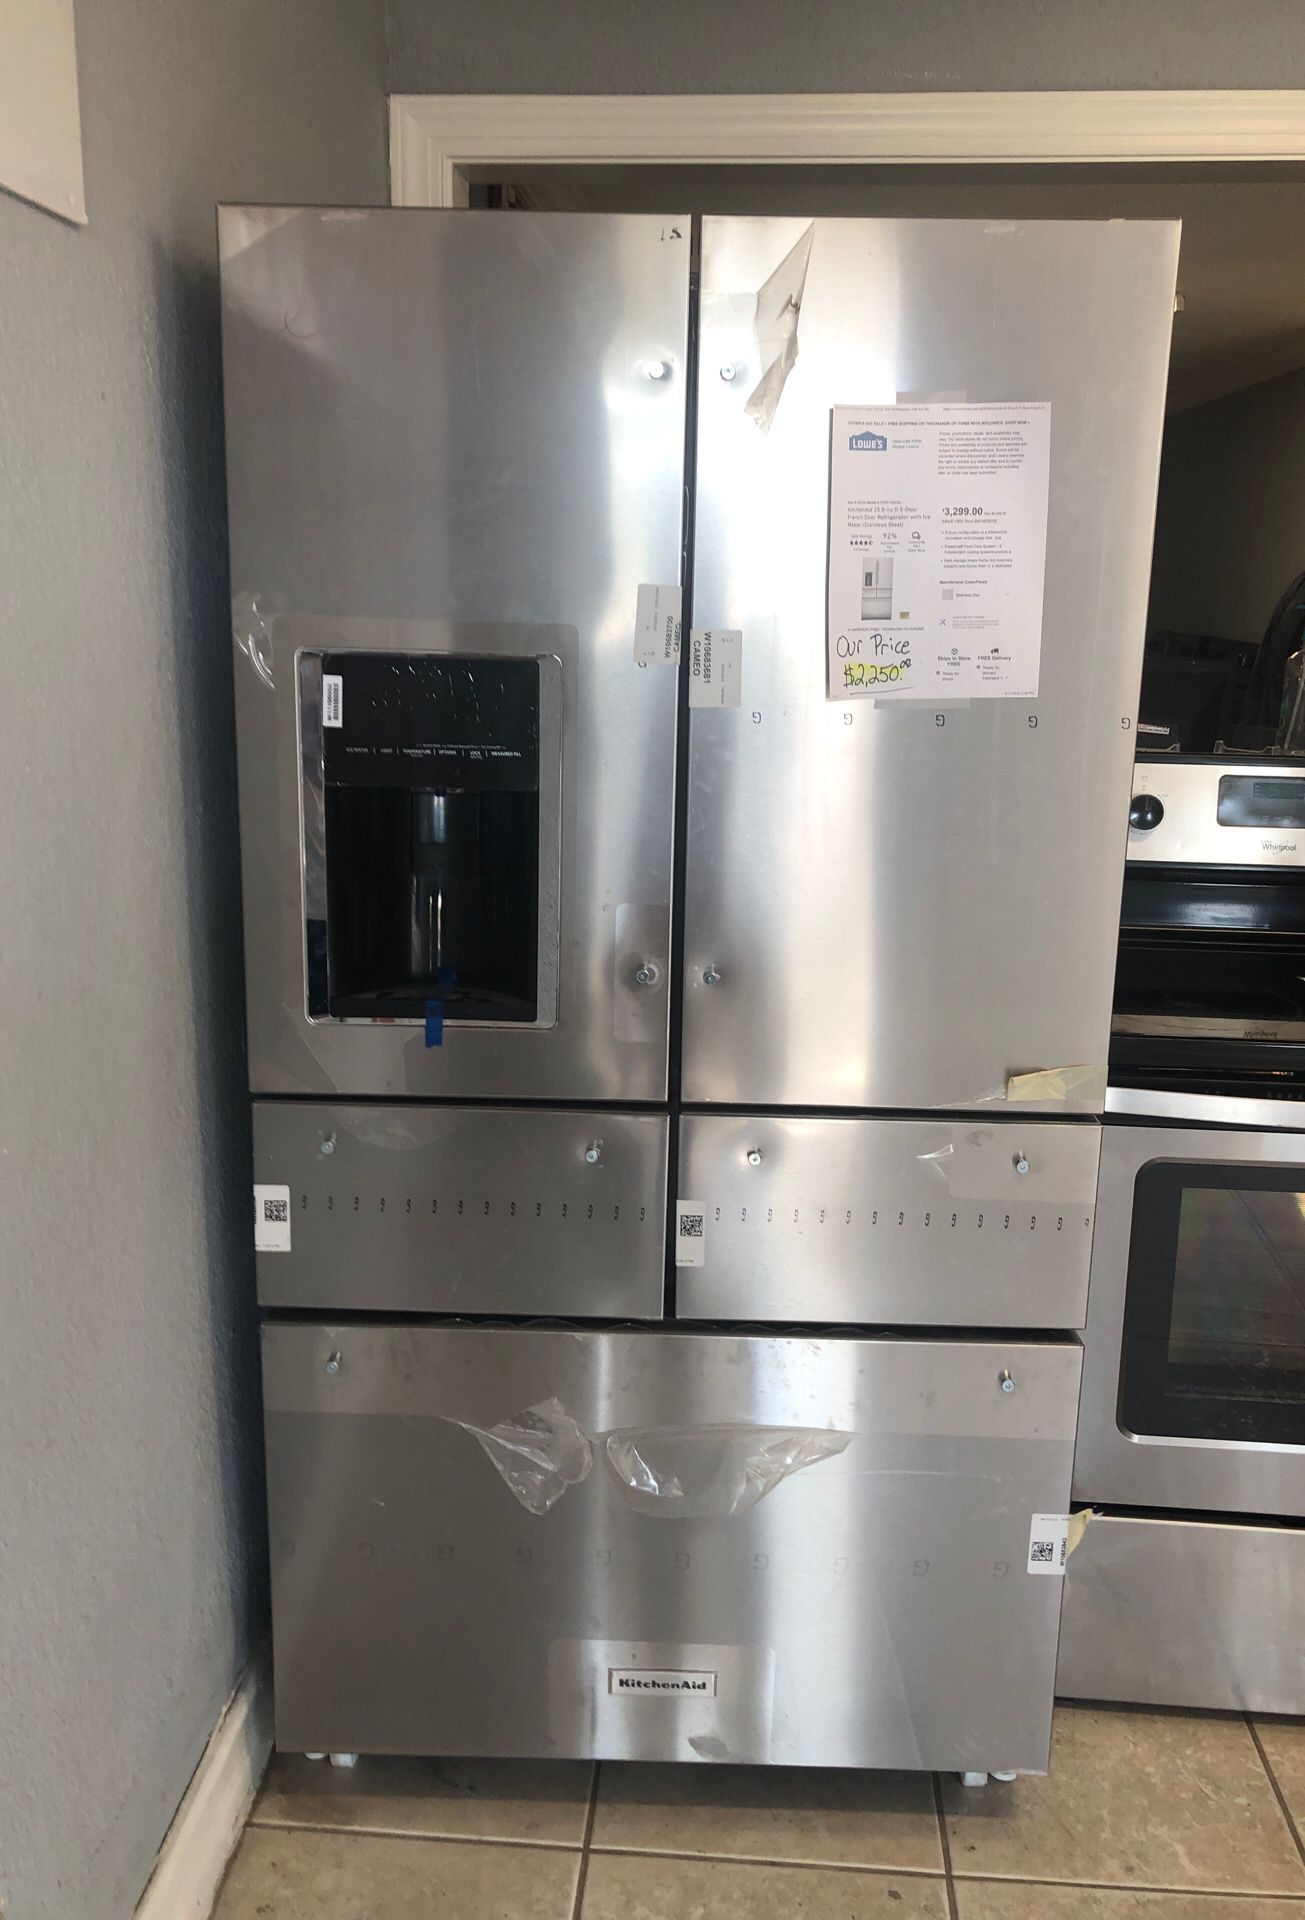 Kitchen aid 5 door refrigerator brand new